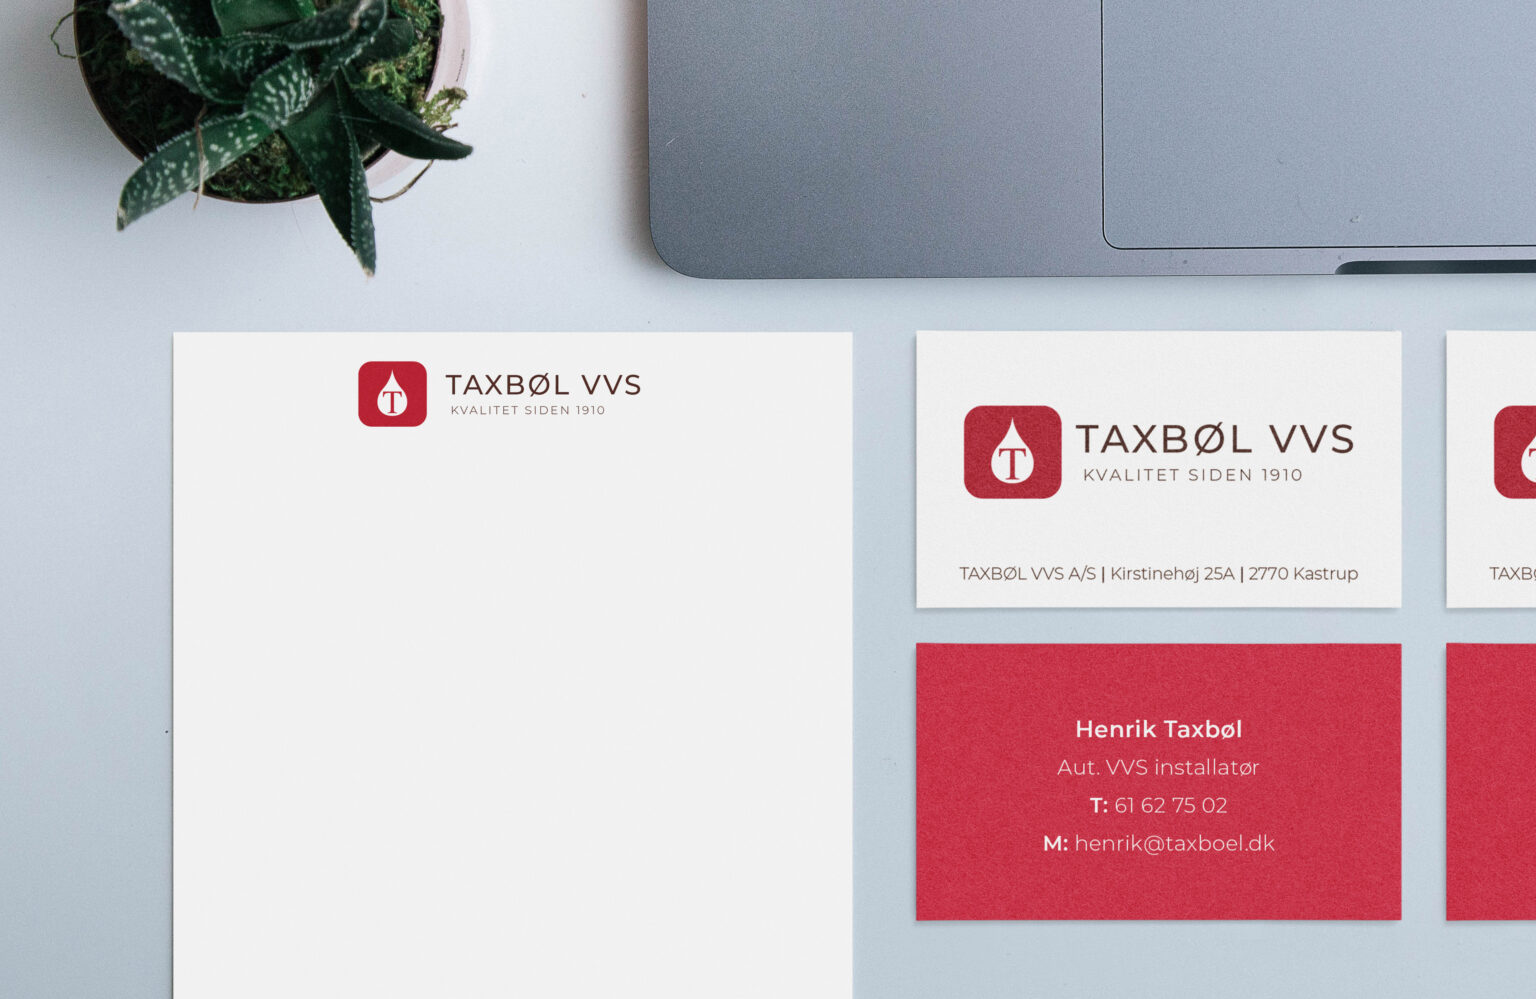 Taxbøl VVS visitkort og brevpapir på et bord med en MacBook og en plante